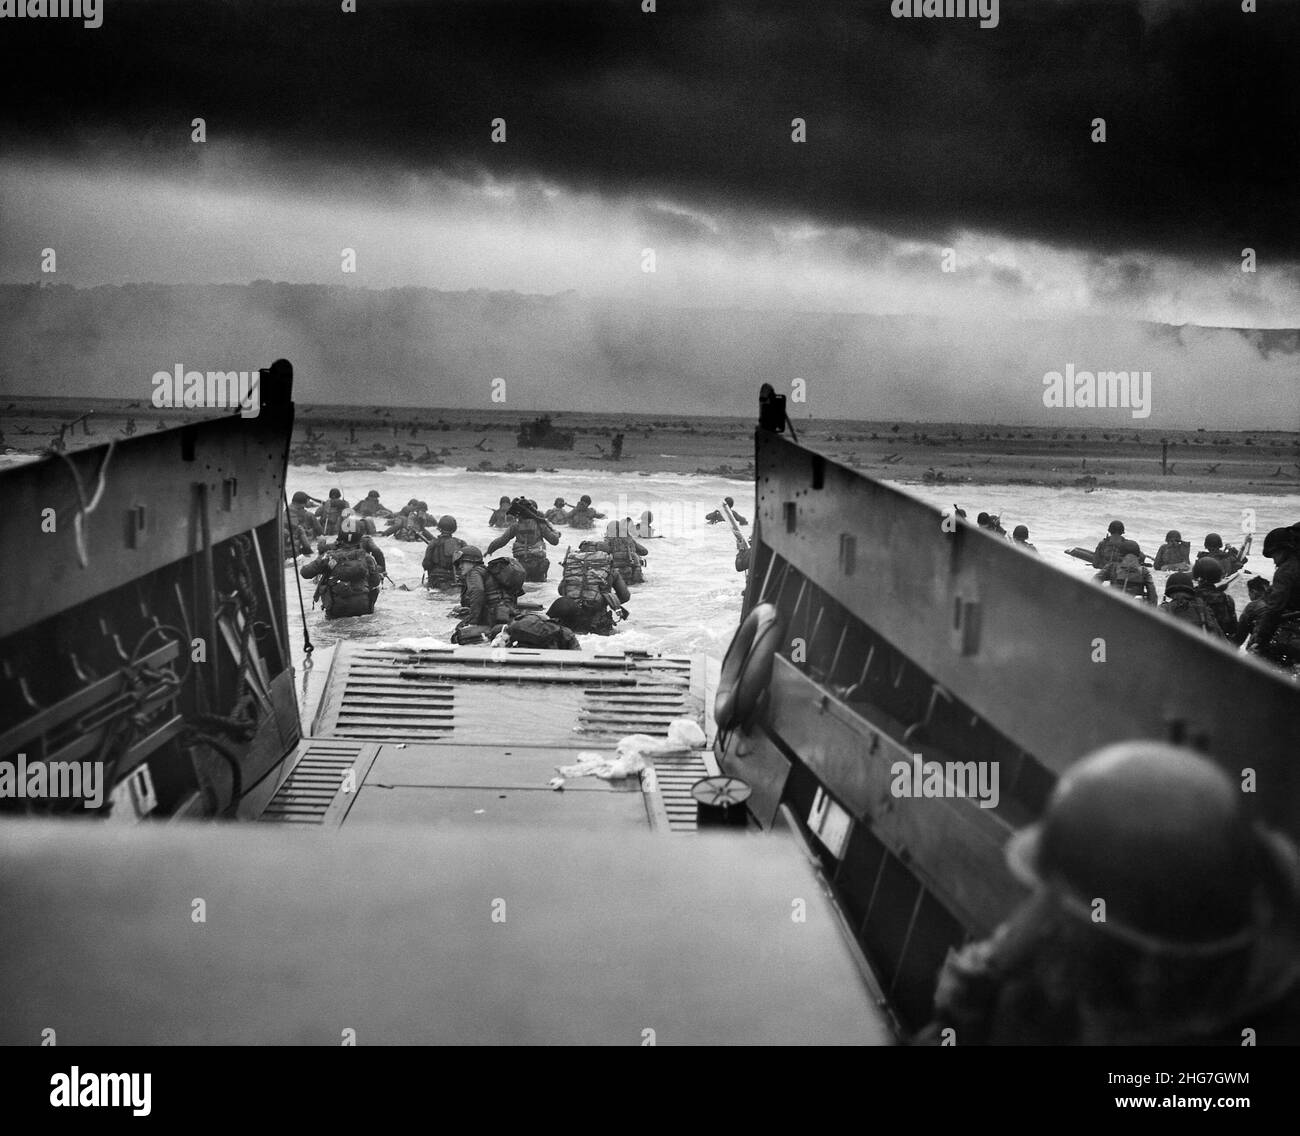 Les atterrissages du jour J - vue de l'intérieur d'un bateau d'atterrissage montrant des hommes du 16th Infantry Regiment, US 1st Infantry Division barboter à terre sur Omaha Beach avec la plage couverte de fumée au-delà Banque D'Images